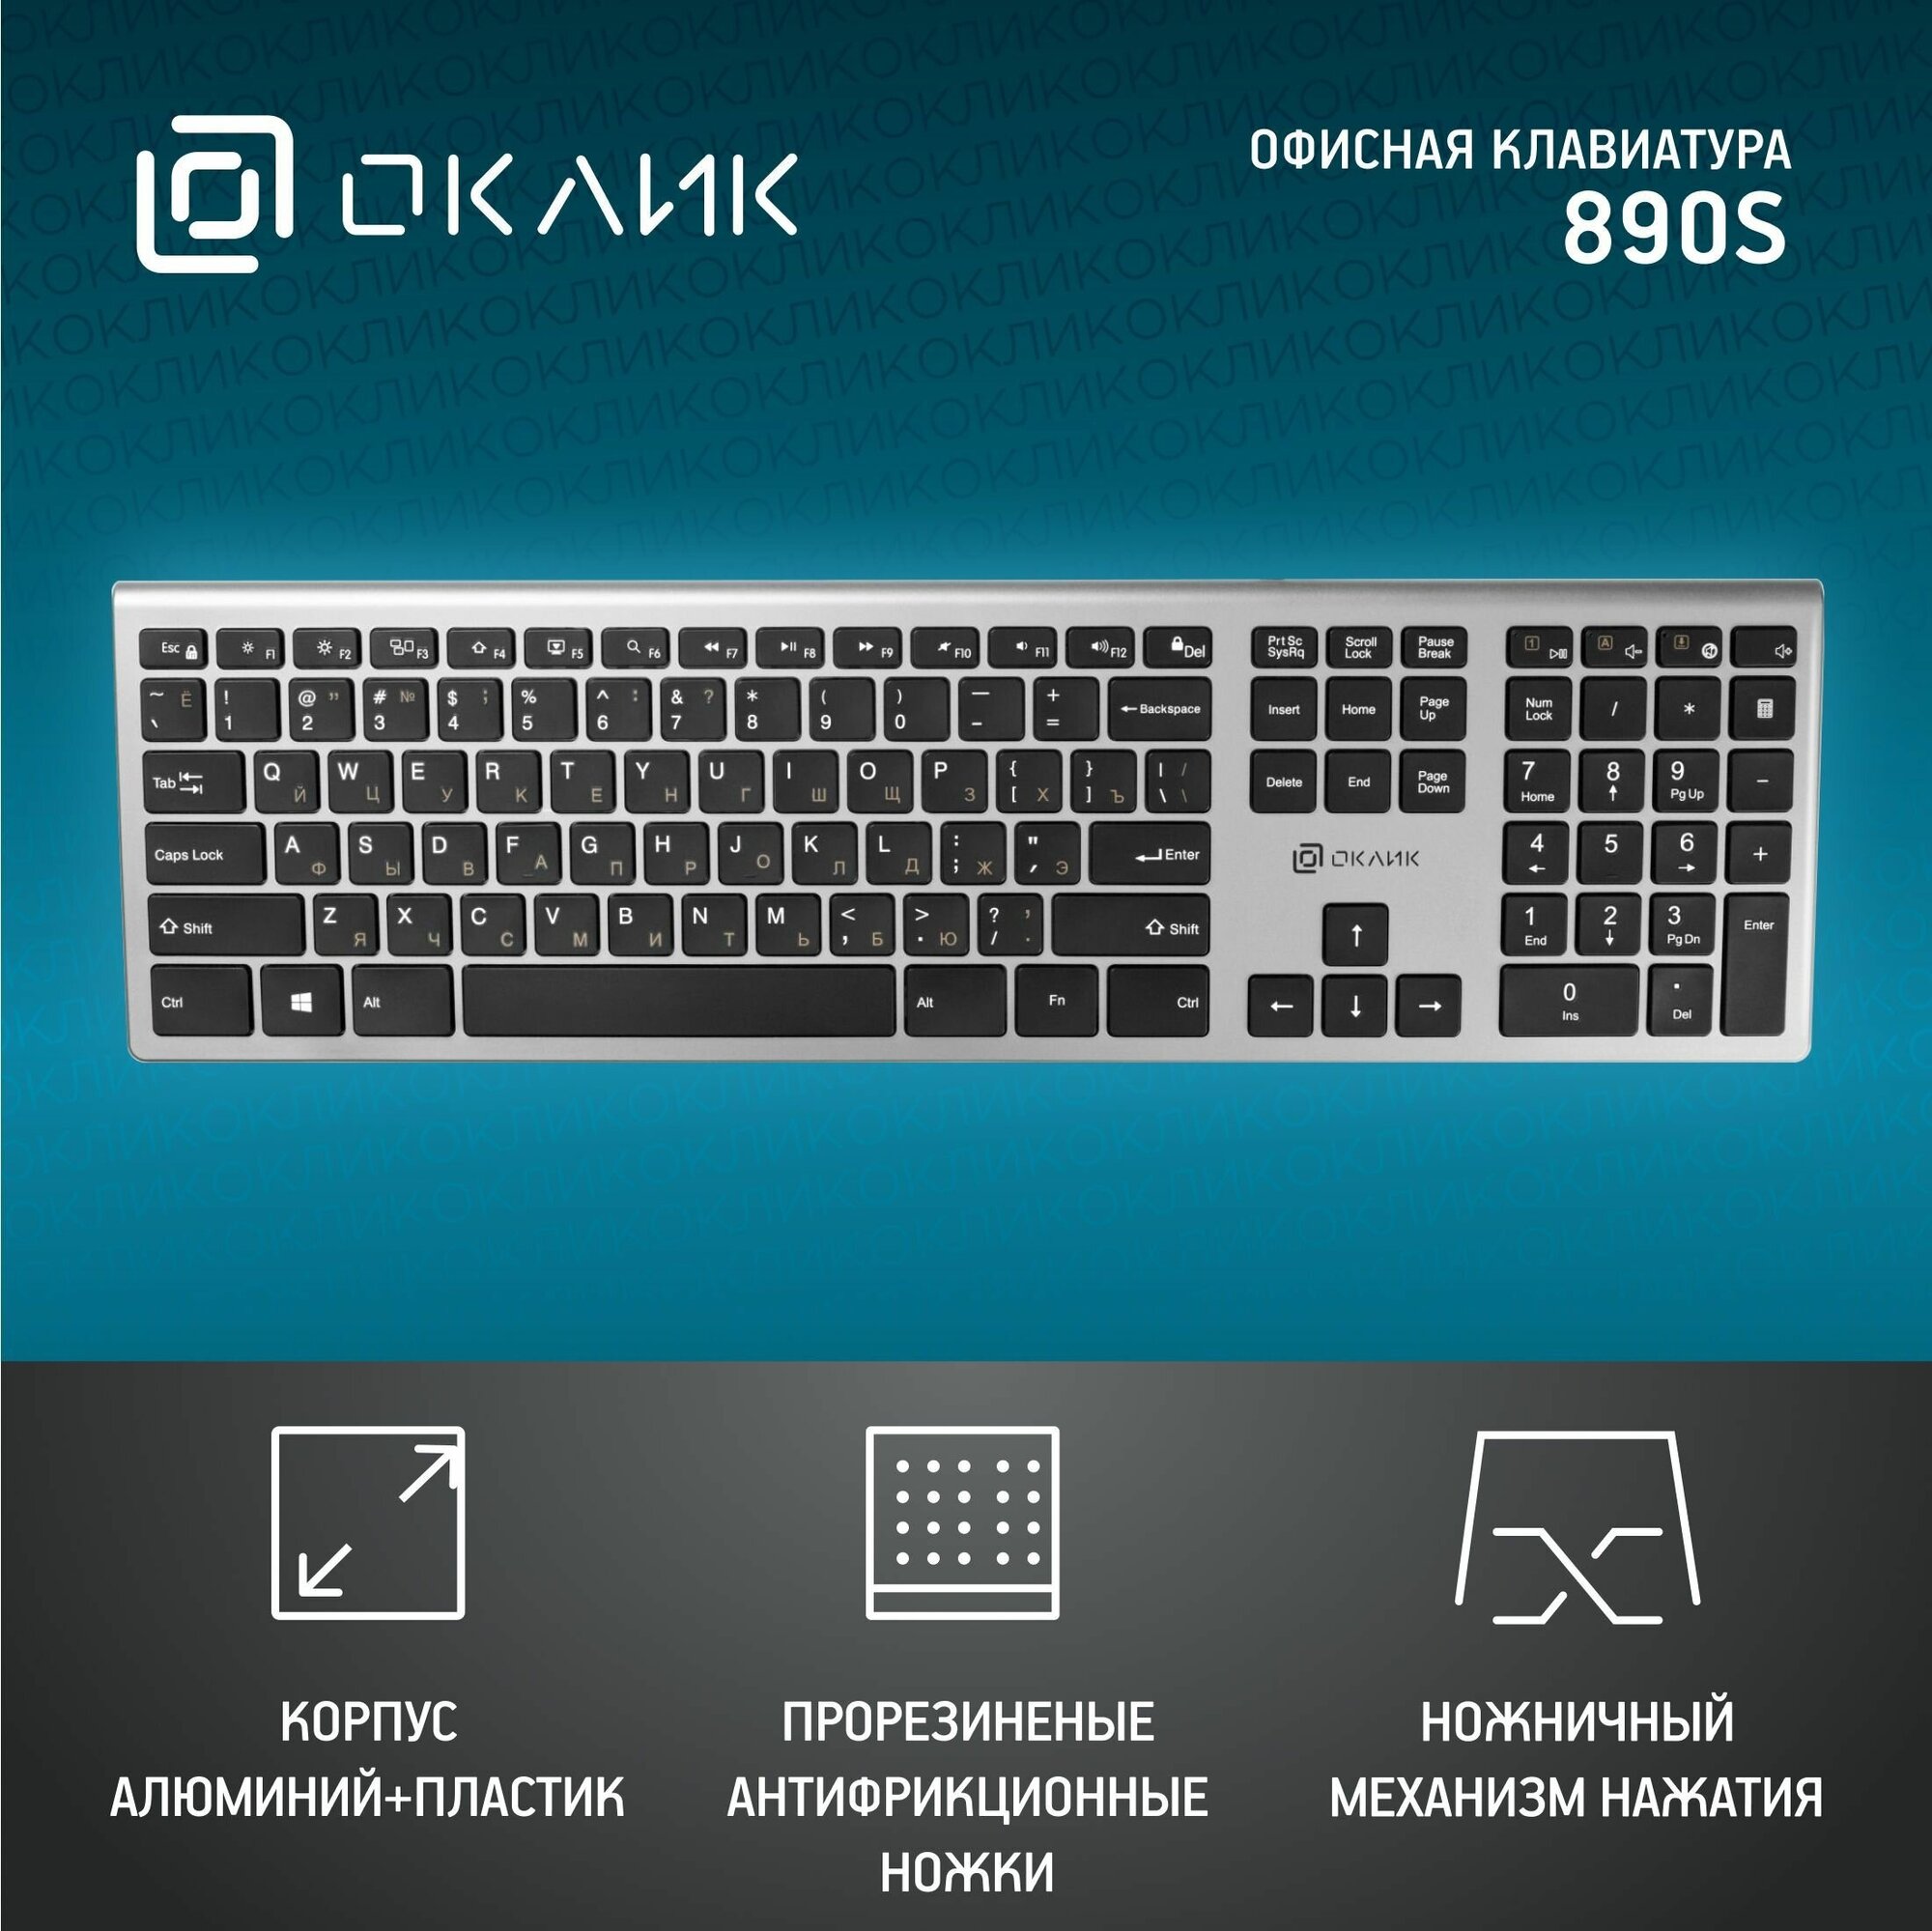 Клавиатура Оклик 890S серый/черный USB slim Multimedia, серебристый, 436.3x23x124.6мм.